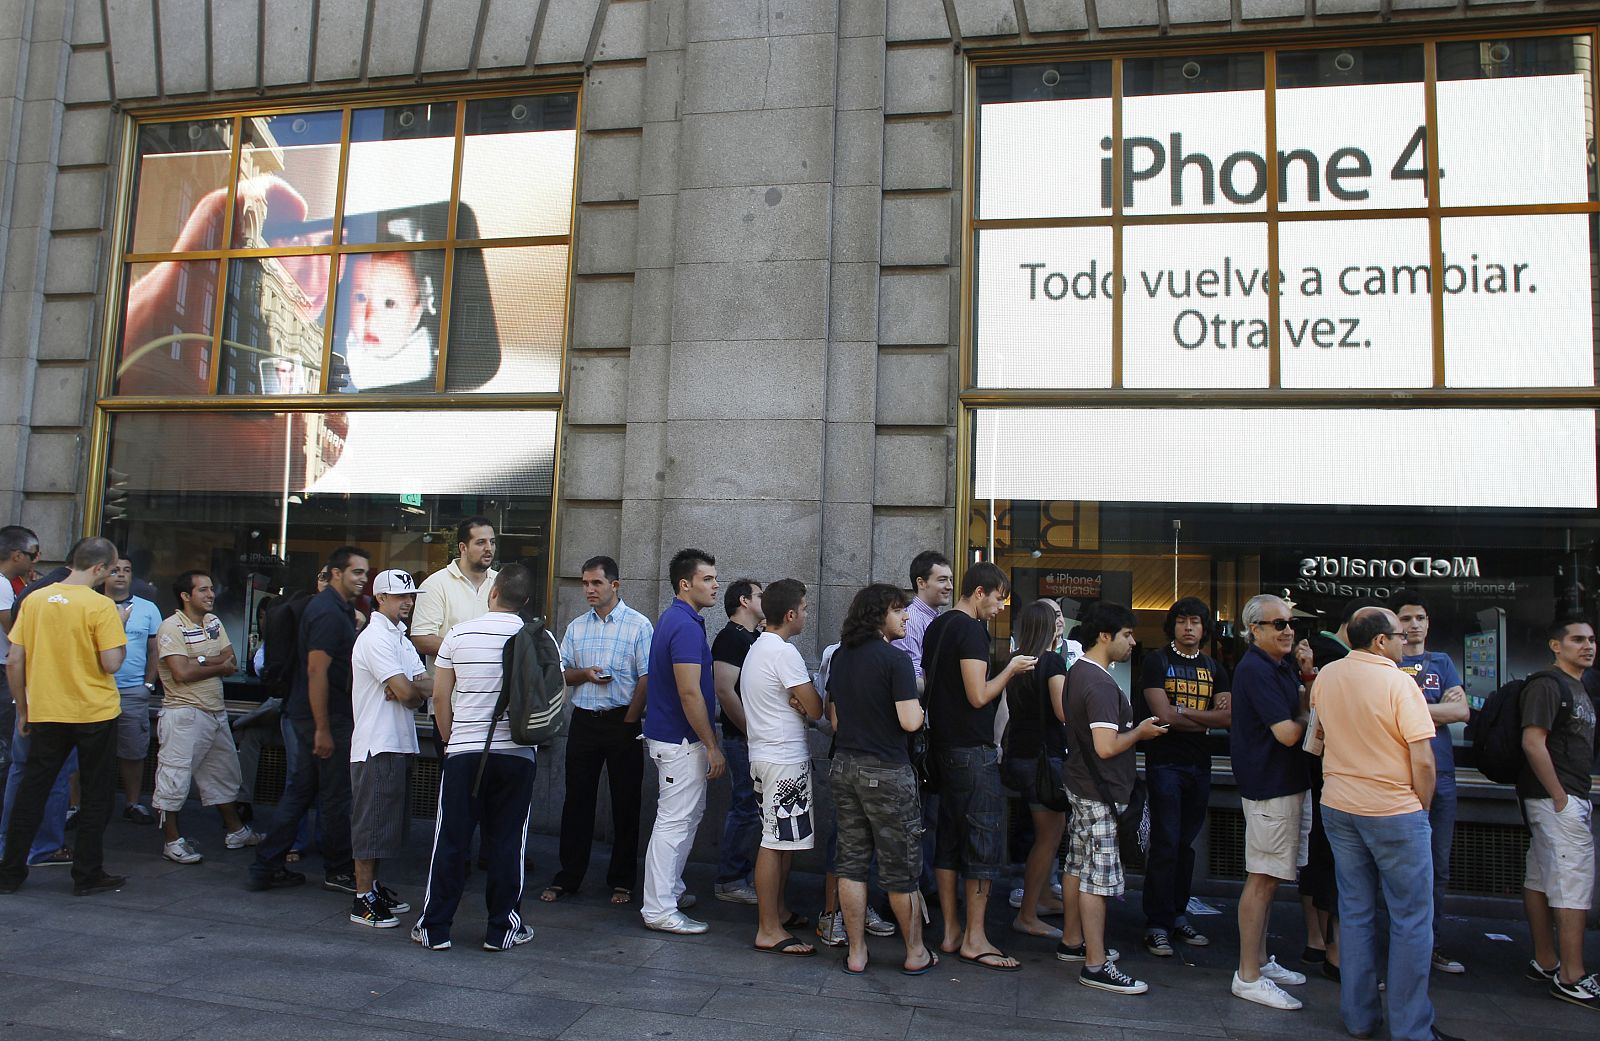 Colas en la tienda de Telefónica en Madrid para adquirir el iPhone 4